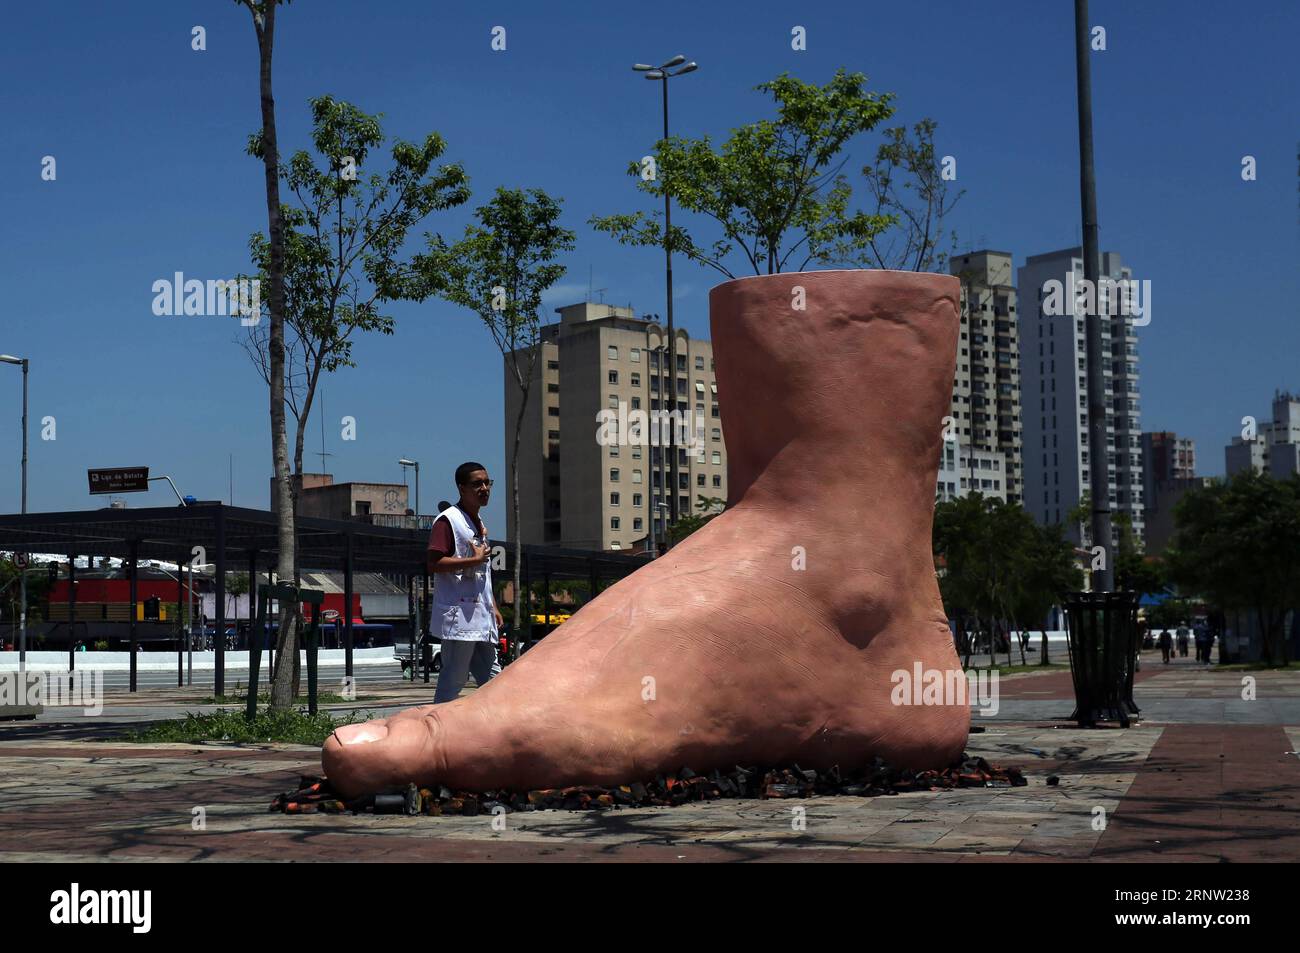 (171130) -- SAN PAOLO, 30 novembre 2017 -- Un uomo guarda una scultura di un piede gigante che calpesta su carboni caldi, dell'artista brasiliano Eduardo Srur, a San Paolo, Brasile, il 29 novembre 2017. La scultura ha l'obiettivo di creare consapevolezza sulla polineuropatia amiloide familiare, una malattia neurologica in cui uno dei possibili sintomi è la ridotta capacità di sentire la temperatura. (Da) (fnc) (zxj) BRAZIL-SAO PAULO-HEALTH-SCULPTURE RahelxPatrasso PUBLICATIONxNOTxINxCHN Foto Stock